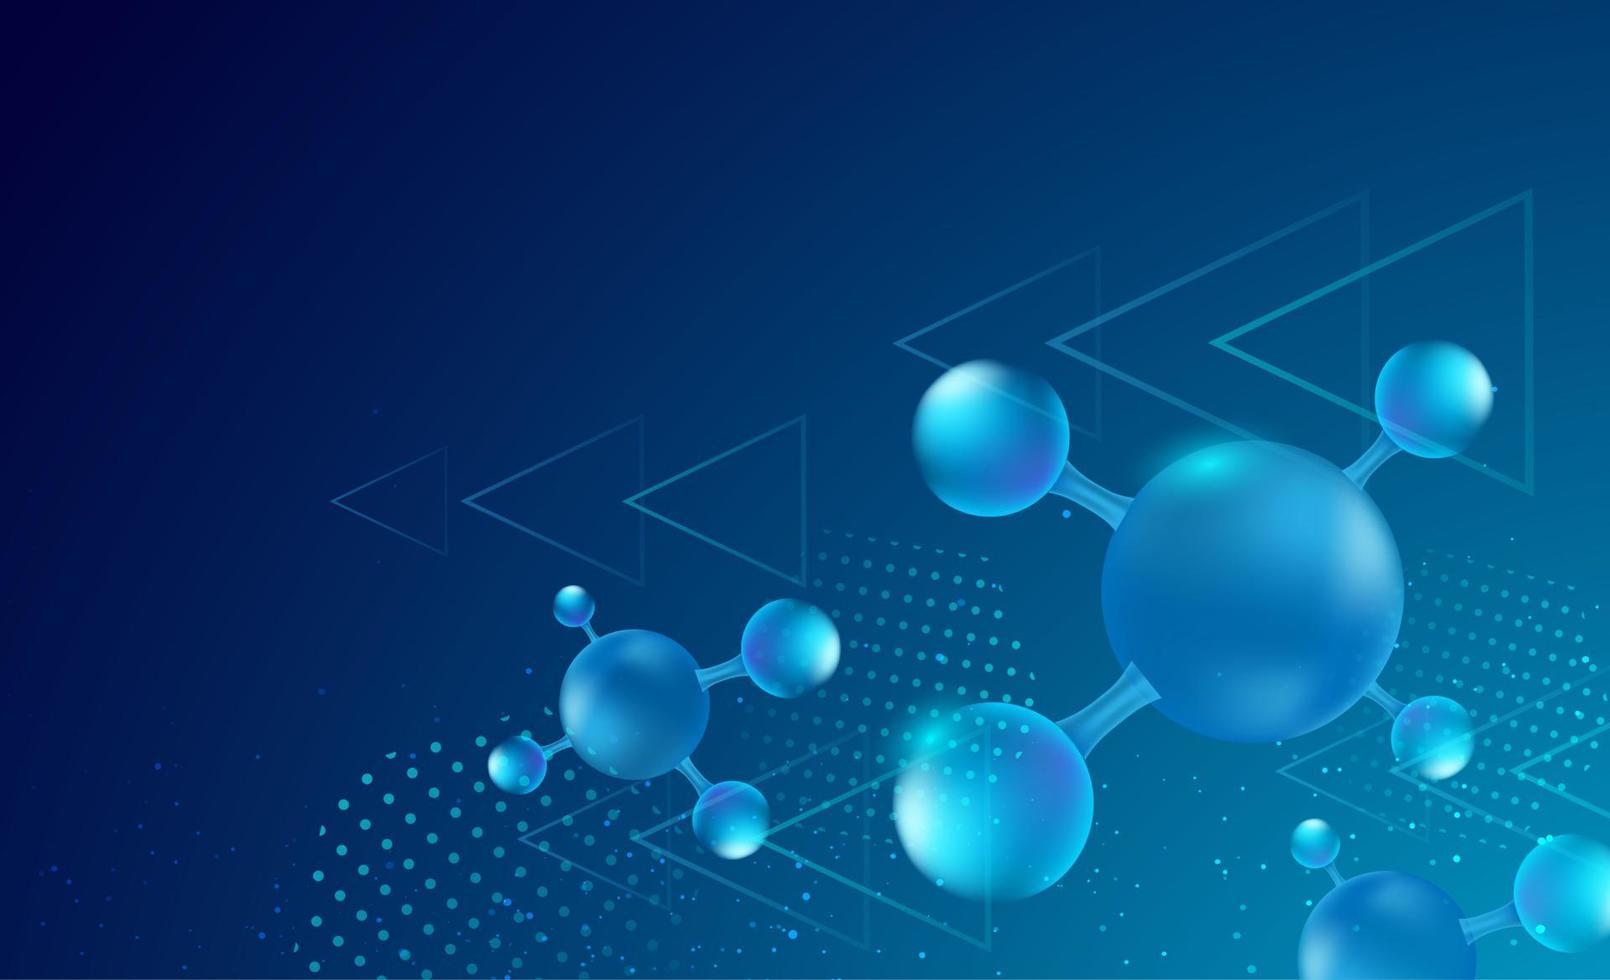 Fondo de ciencia abstracta con elementos de moléculas. fondo azul degradado con molécula de adn para conceptos médicos, científicos y tecnológicos. ilustración vectorial vector